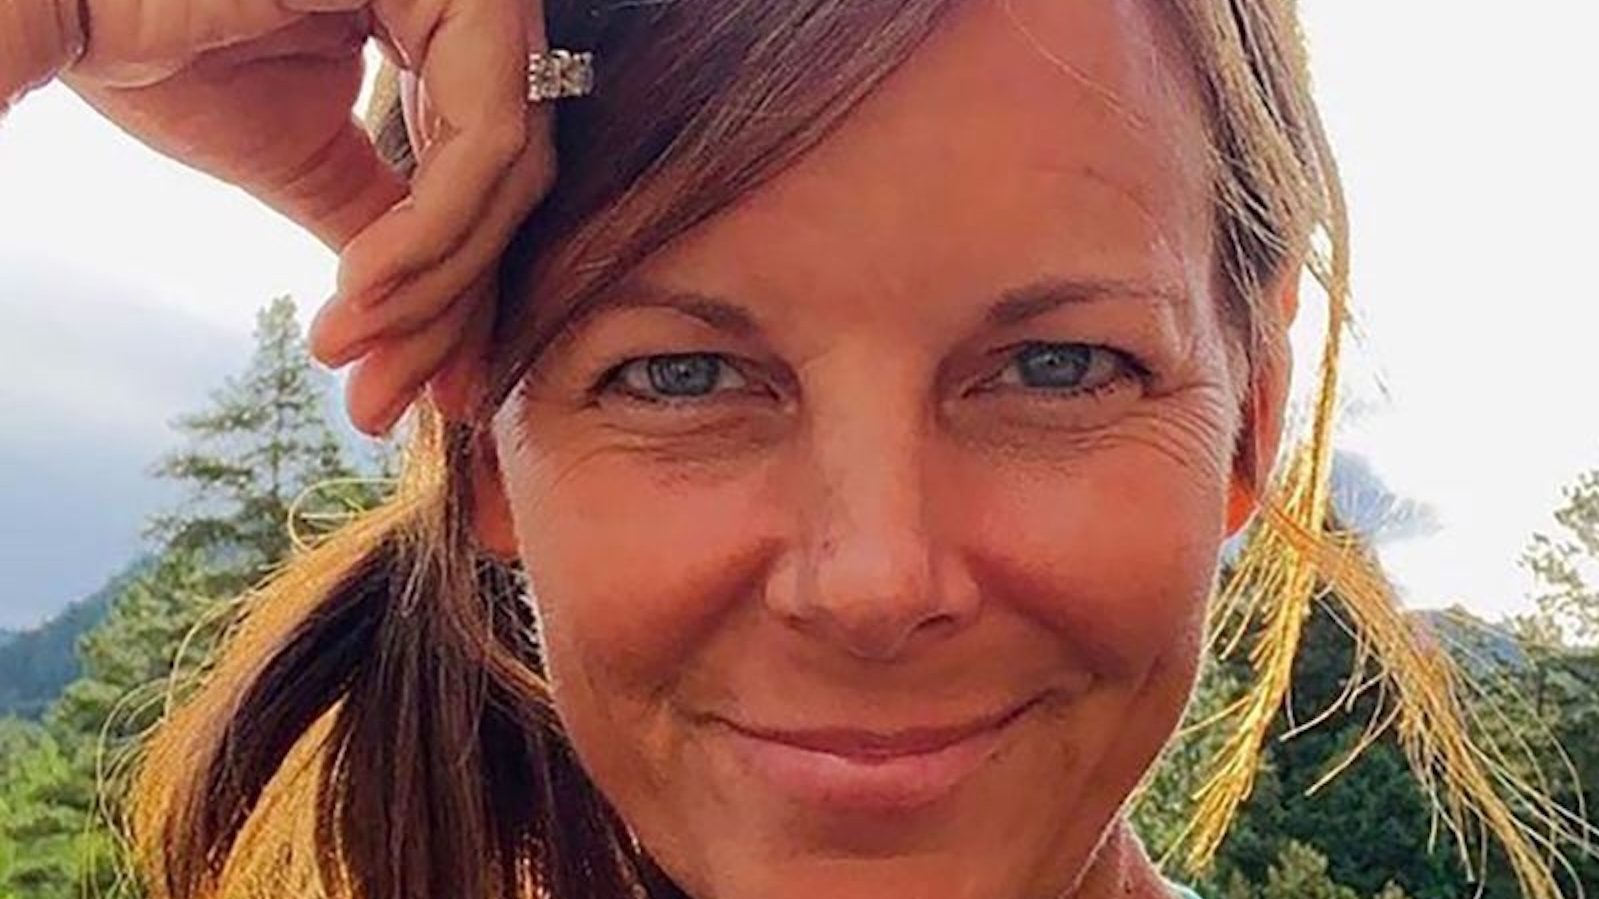 Sussan Morphew: mujer de Colorado que desapareció durante un paseo en bicicleta murió por homicidio y tenía un cóctel de drogas en su organismo, según el forense